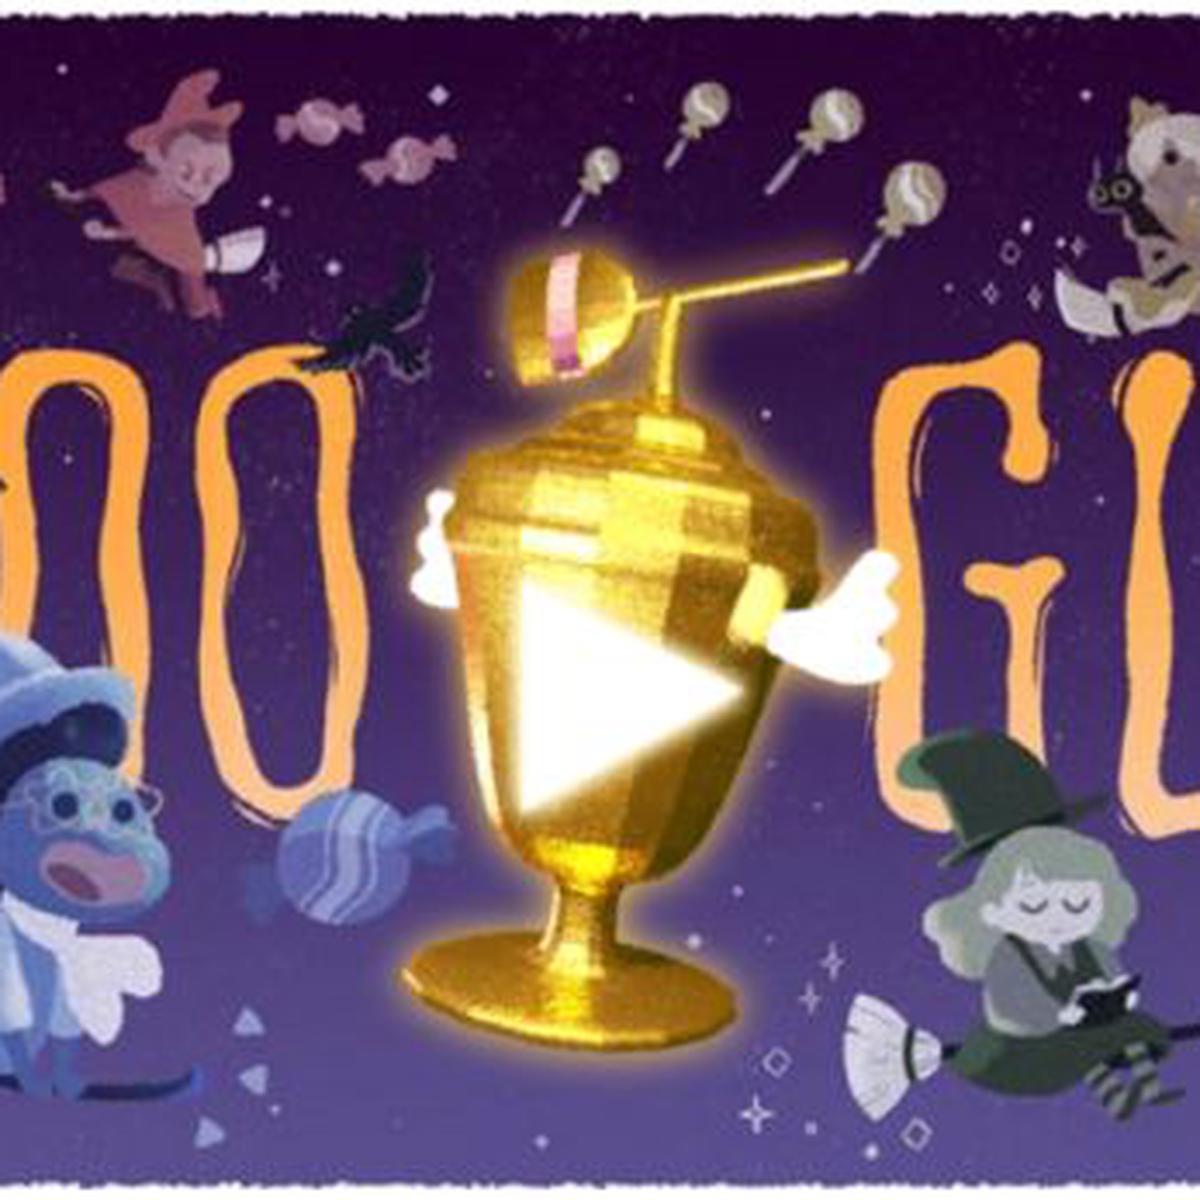 Halloween: Google habilita un juego gratuito para celebrarlo